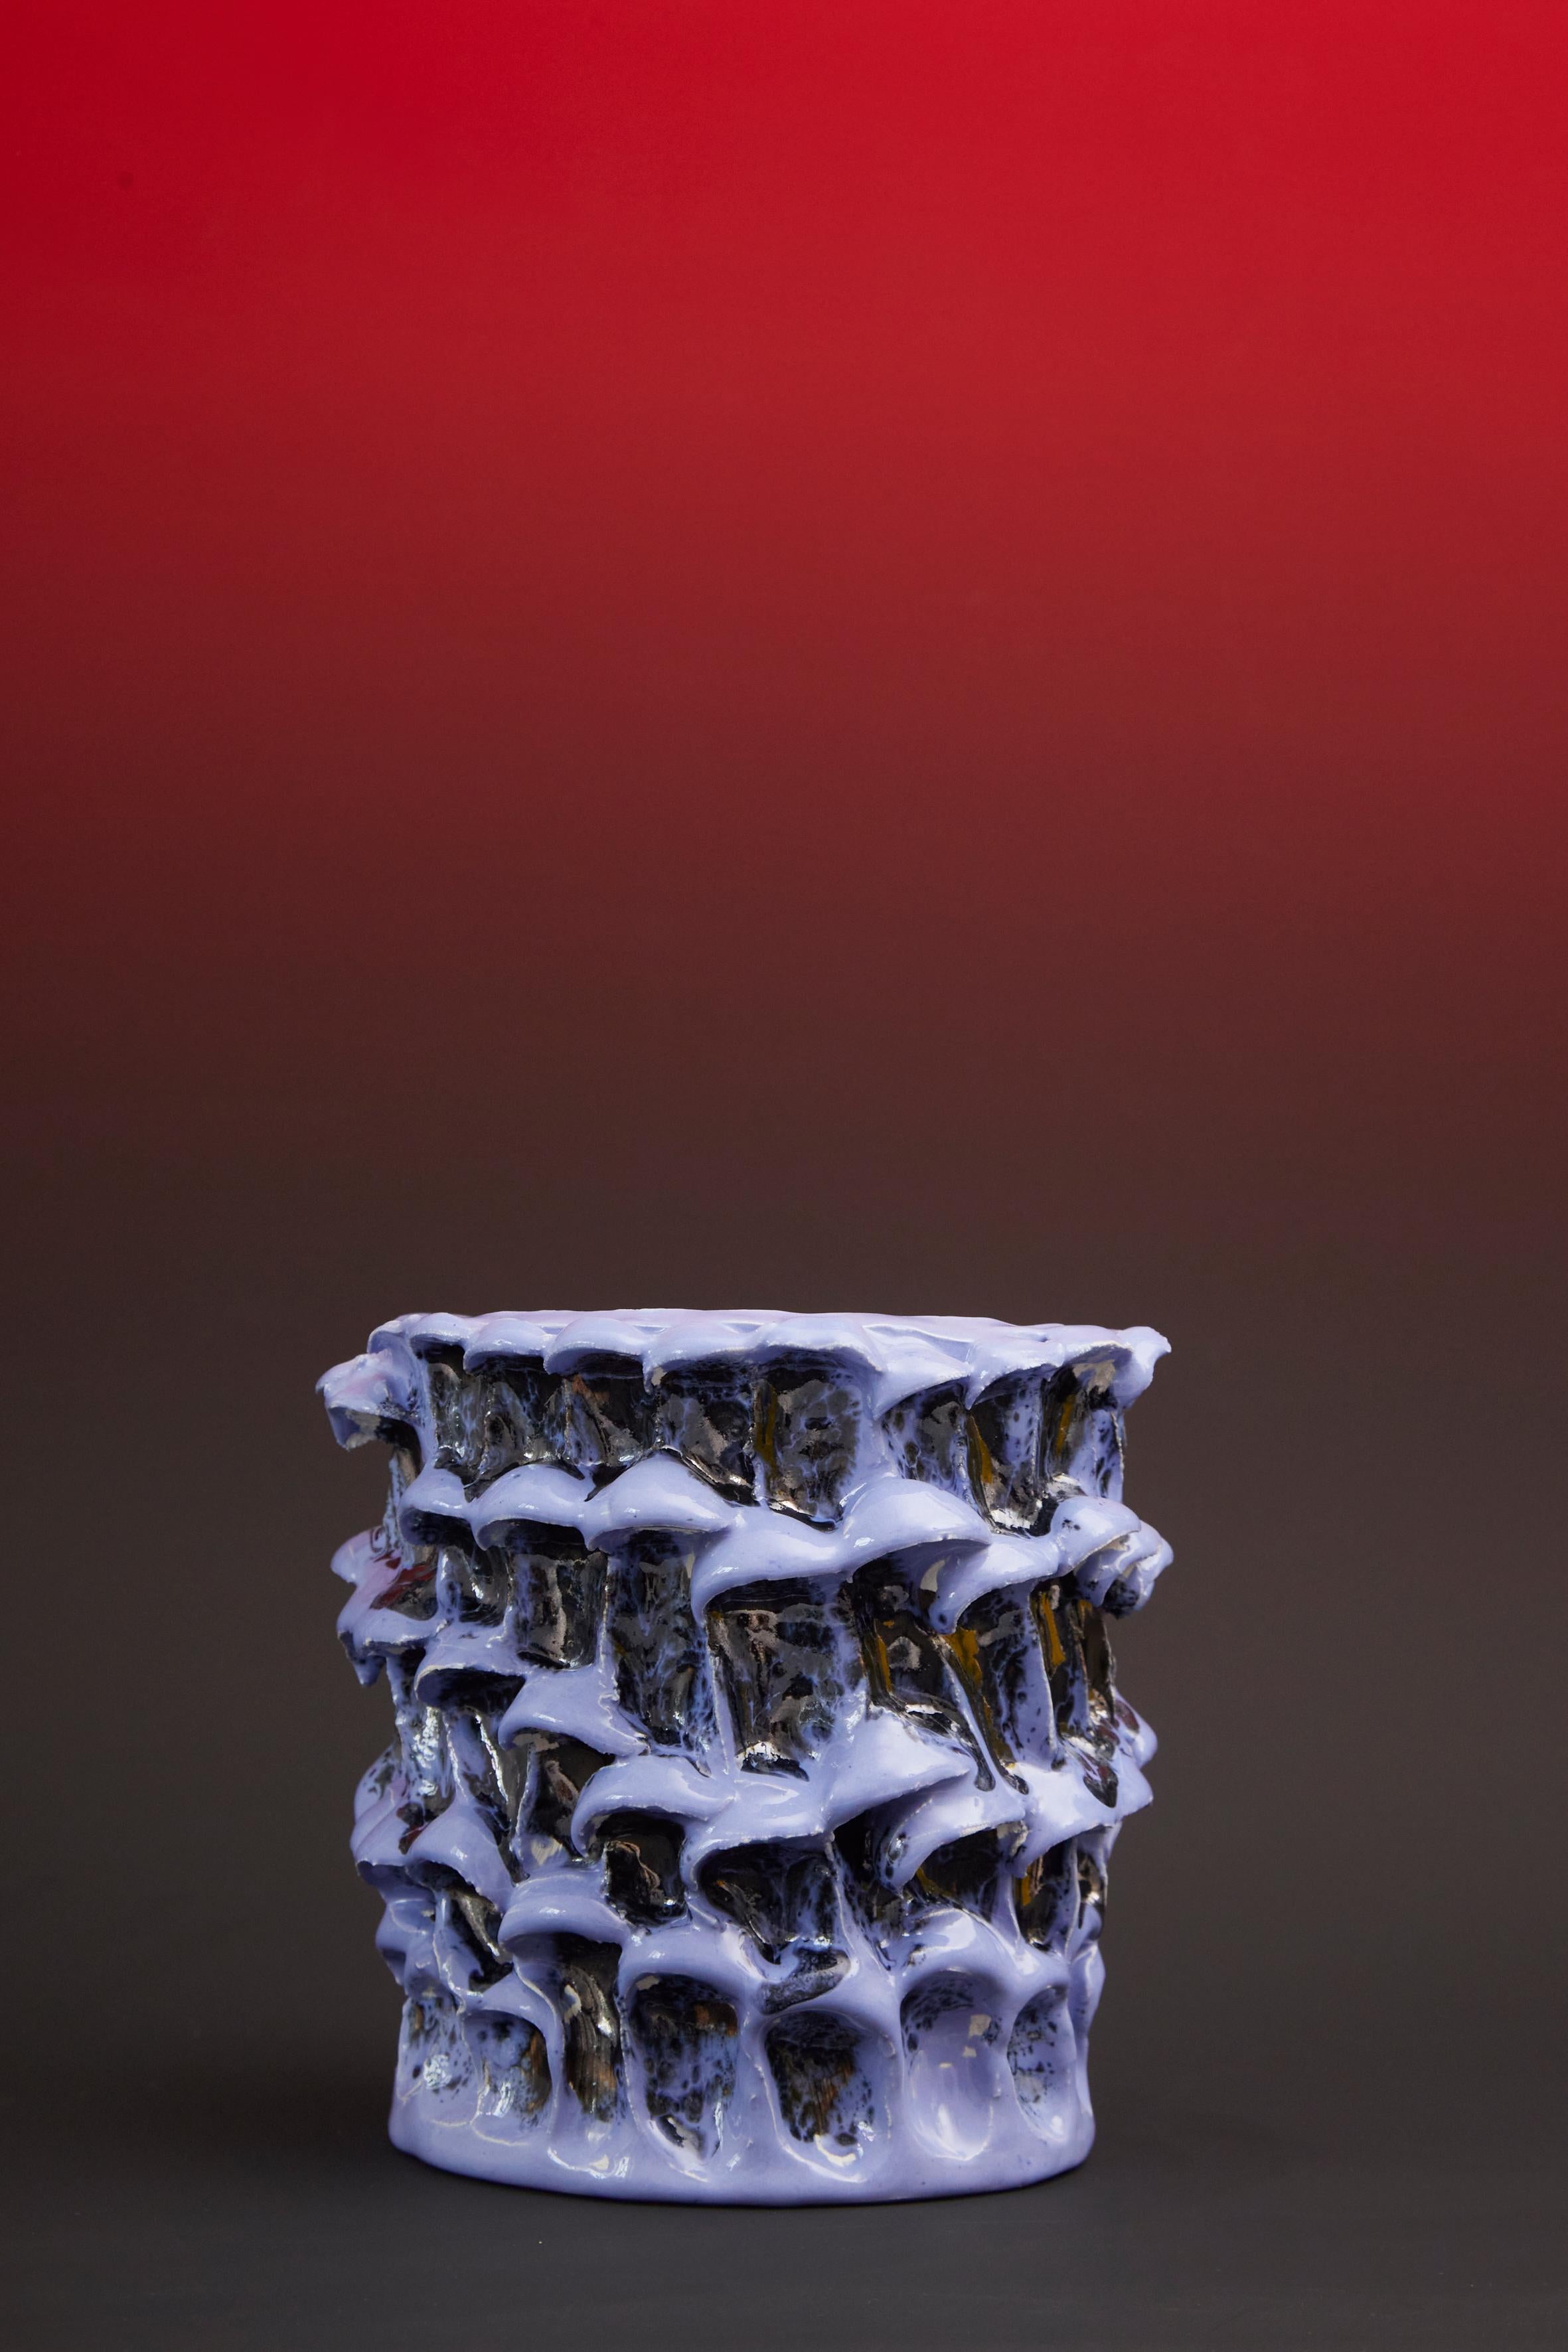 Onda Vase, klein, in Metallic Lavendel n. 01 / 20 nummerierte Serie
Einzigartiges handgefertigtes Stück
Glasiertes Steingut von Daria Dazzan
Steingut, Glasuren
17 X 18 cm ab.

Handgefertigte Steingutvase von Daria Dazzan, Einzelstück,